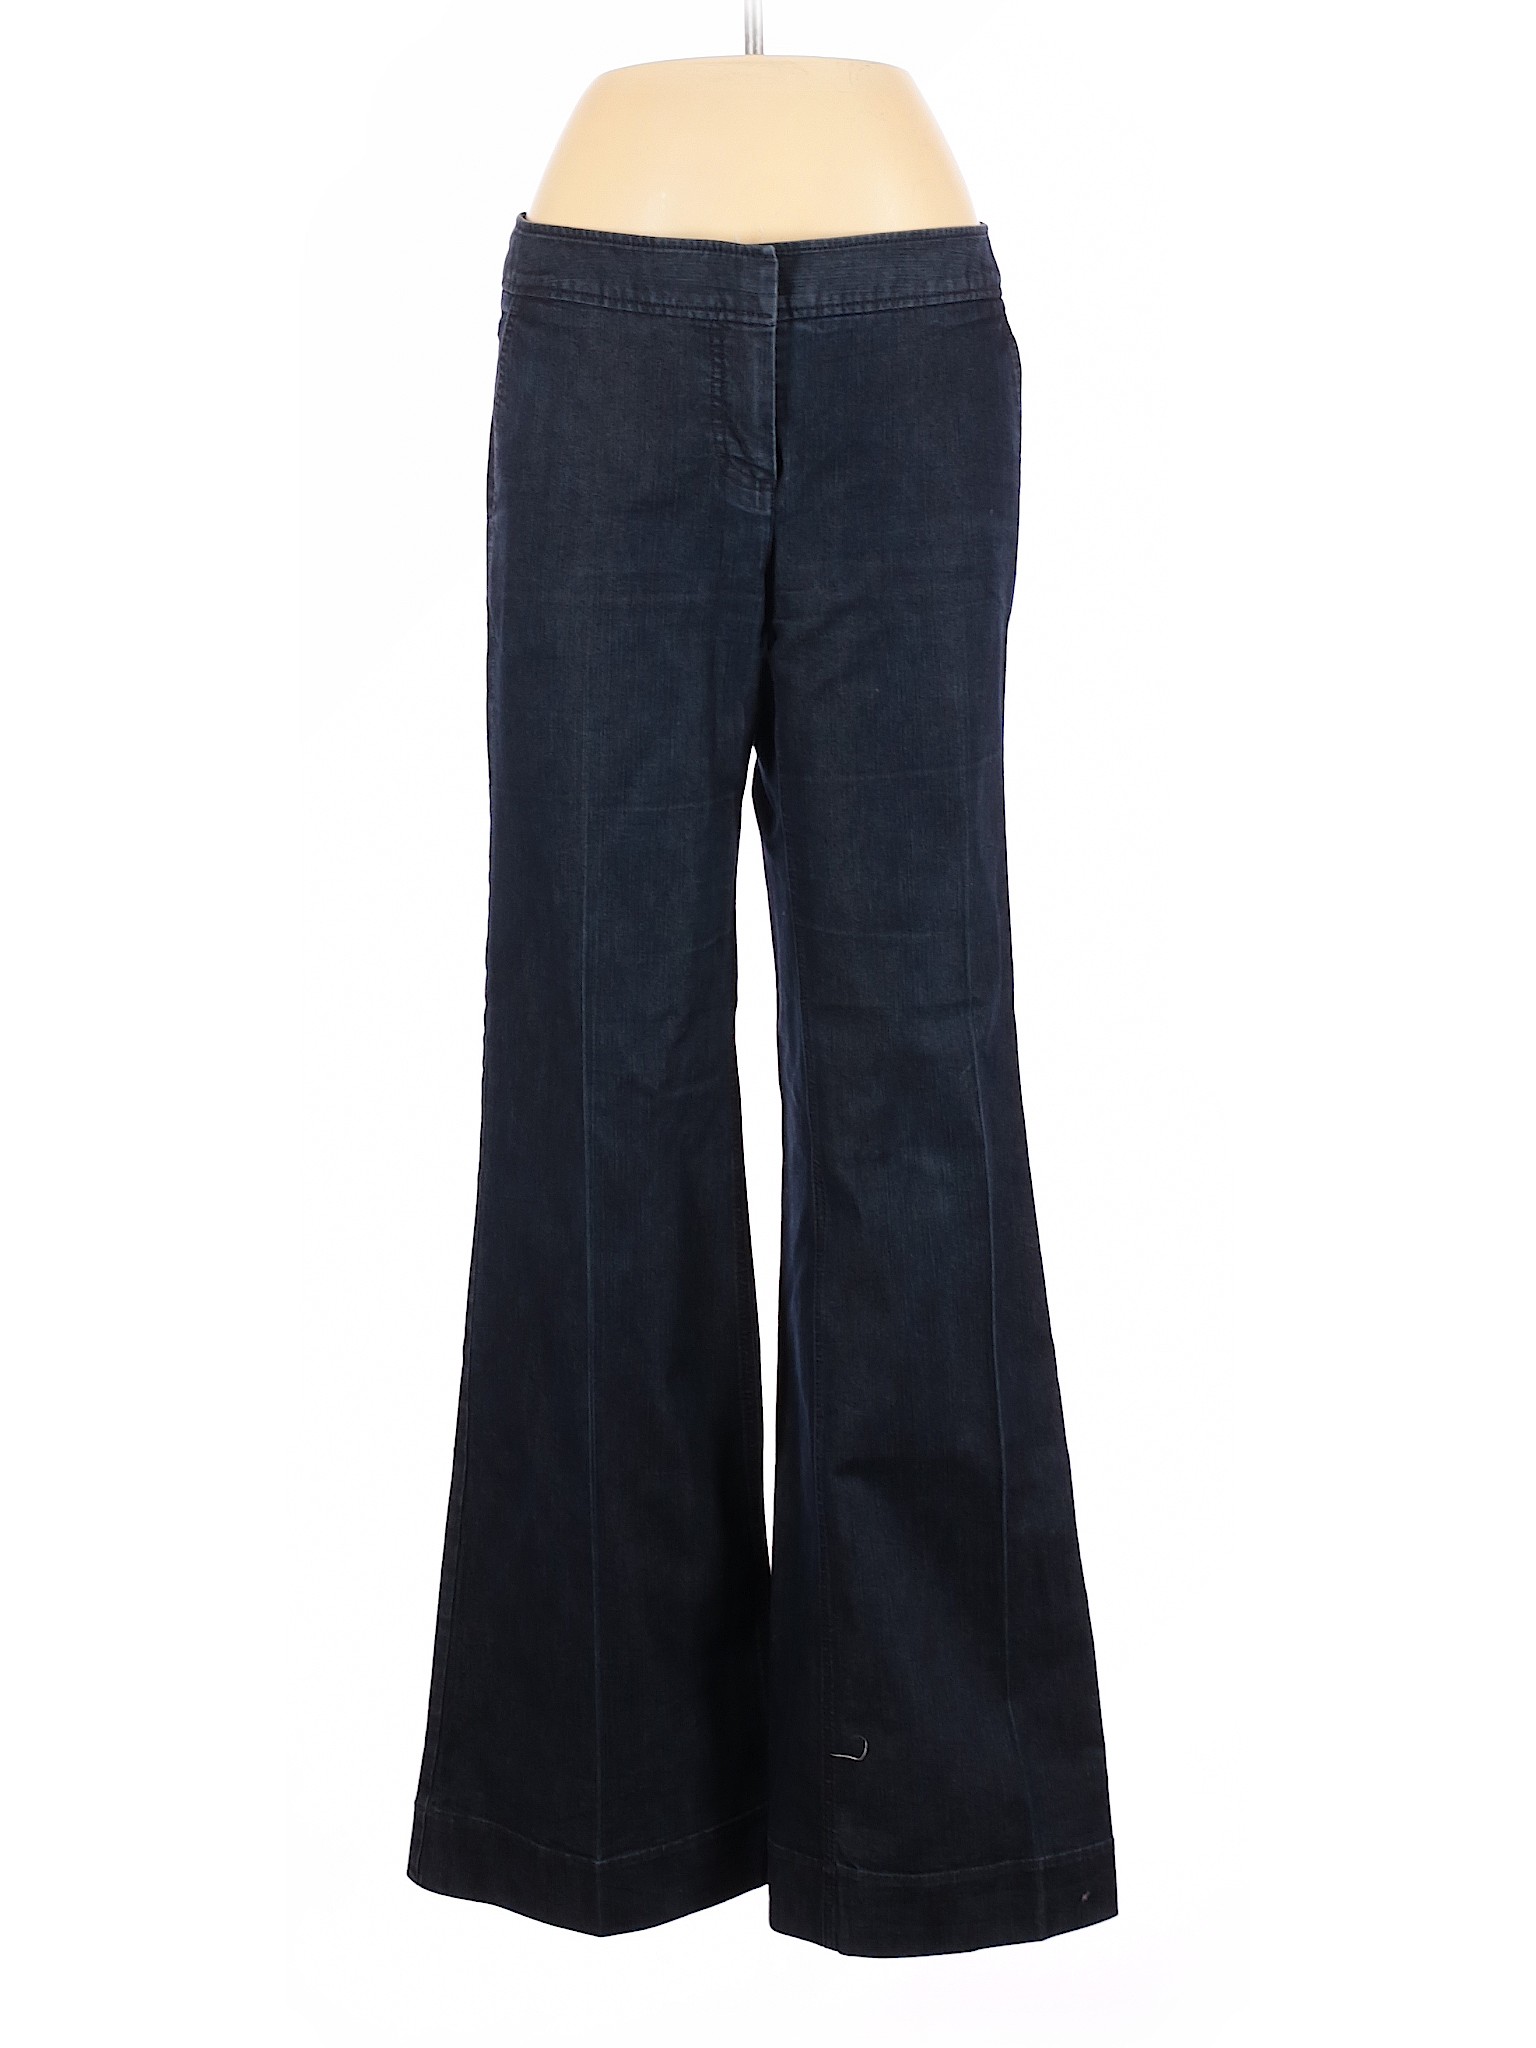 Kenneth Cole REACTION Women Blue Jeans 10 | eBay